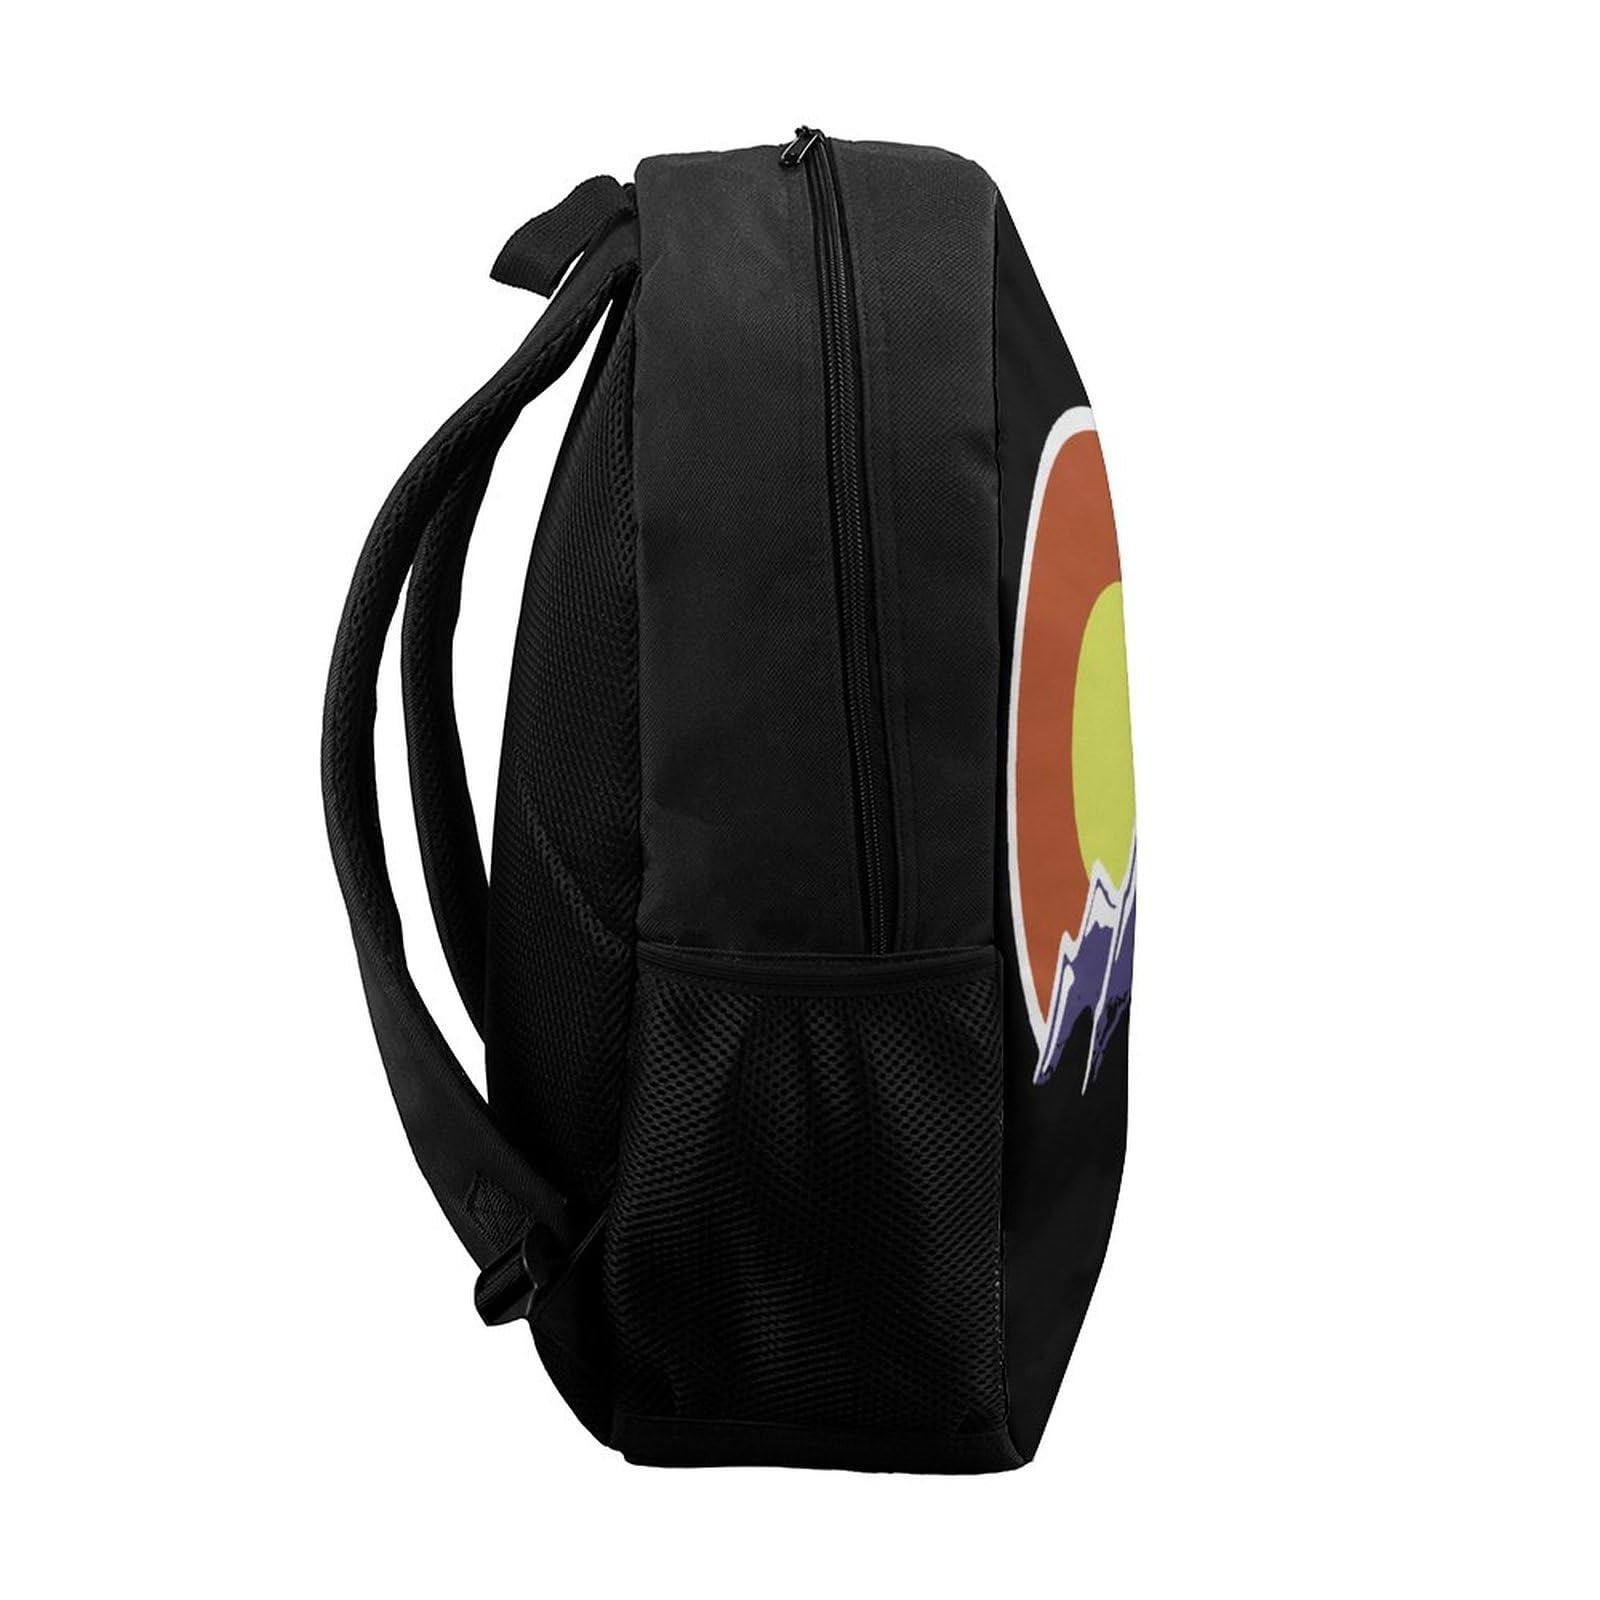 Colorado Mountain Travel Backpack Casual 17 Inch Large Daypack Shoulder Bag with Adjustable Shoulder Straps